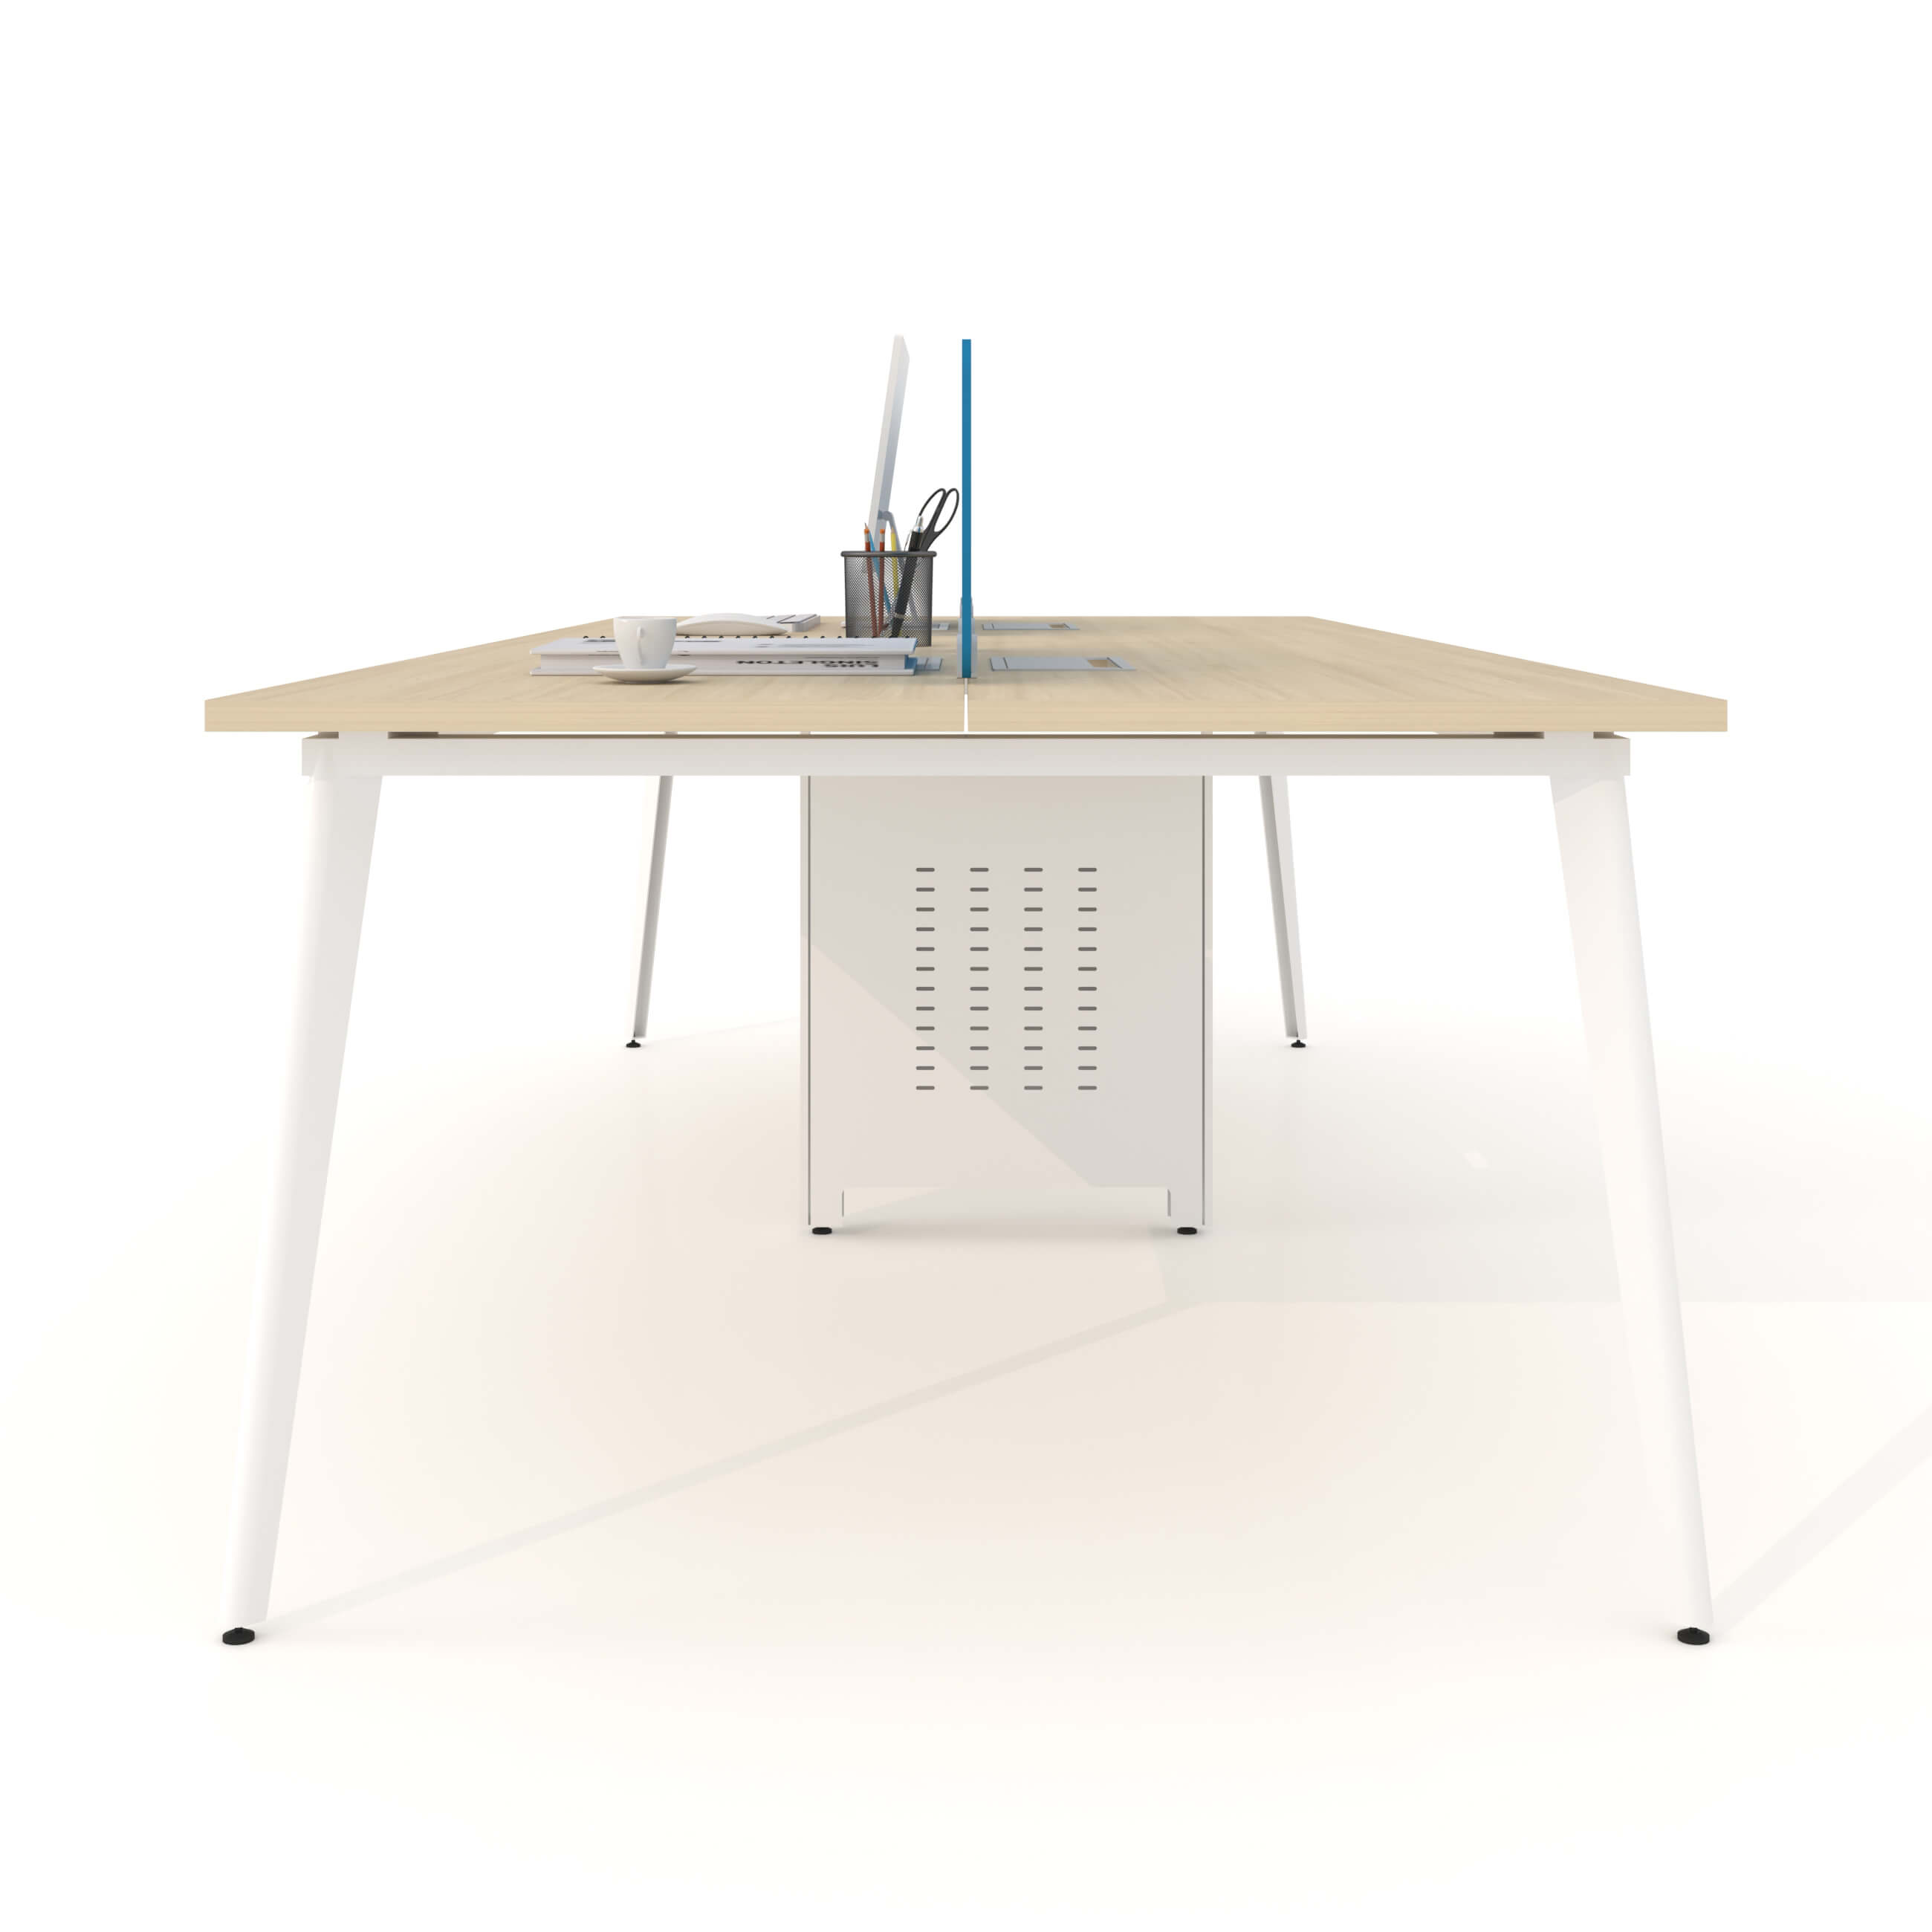 사무실을 위한 안정적인 강철 확장형 테이블